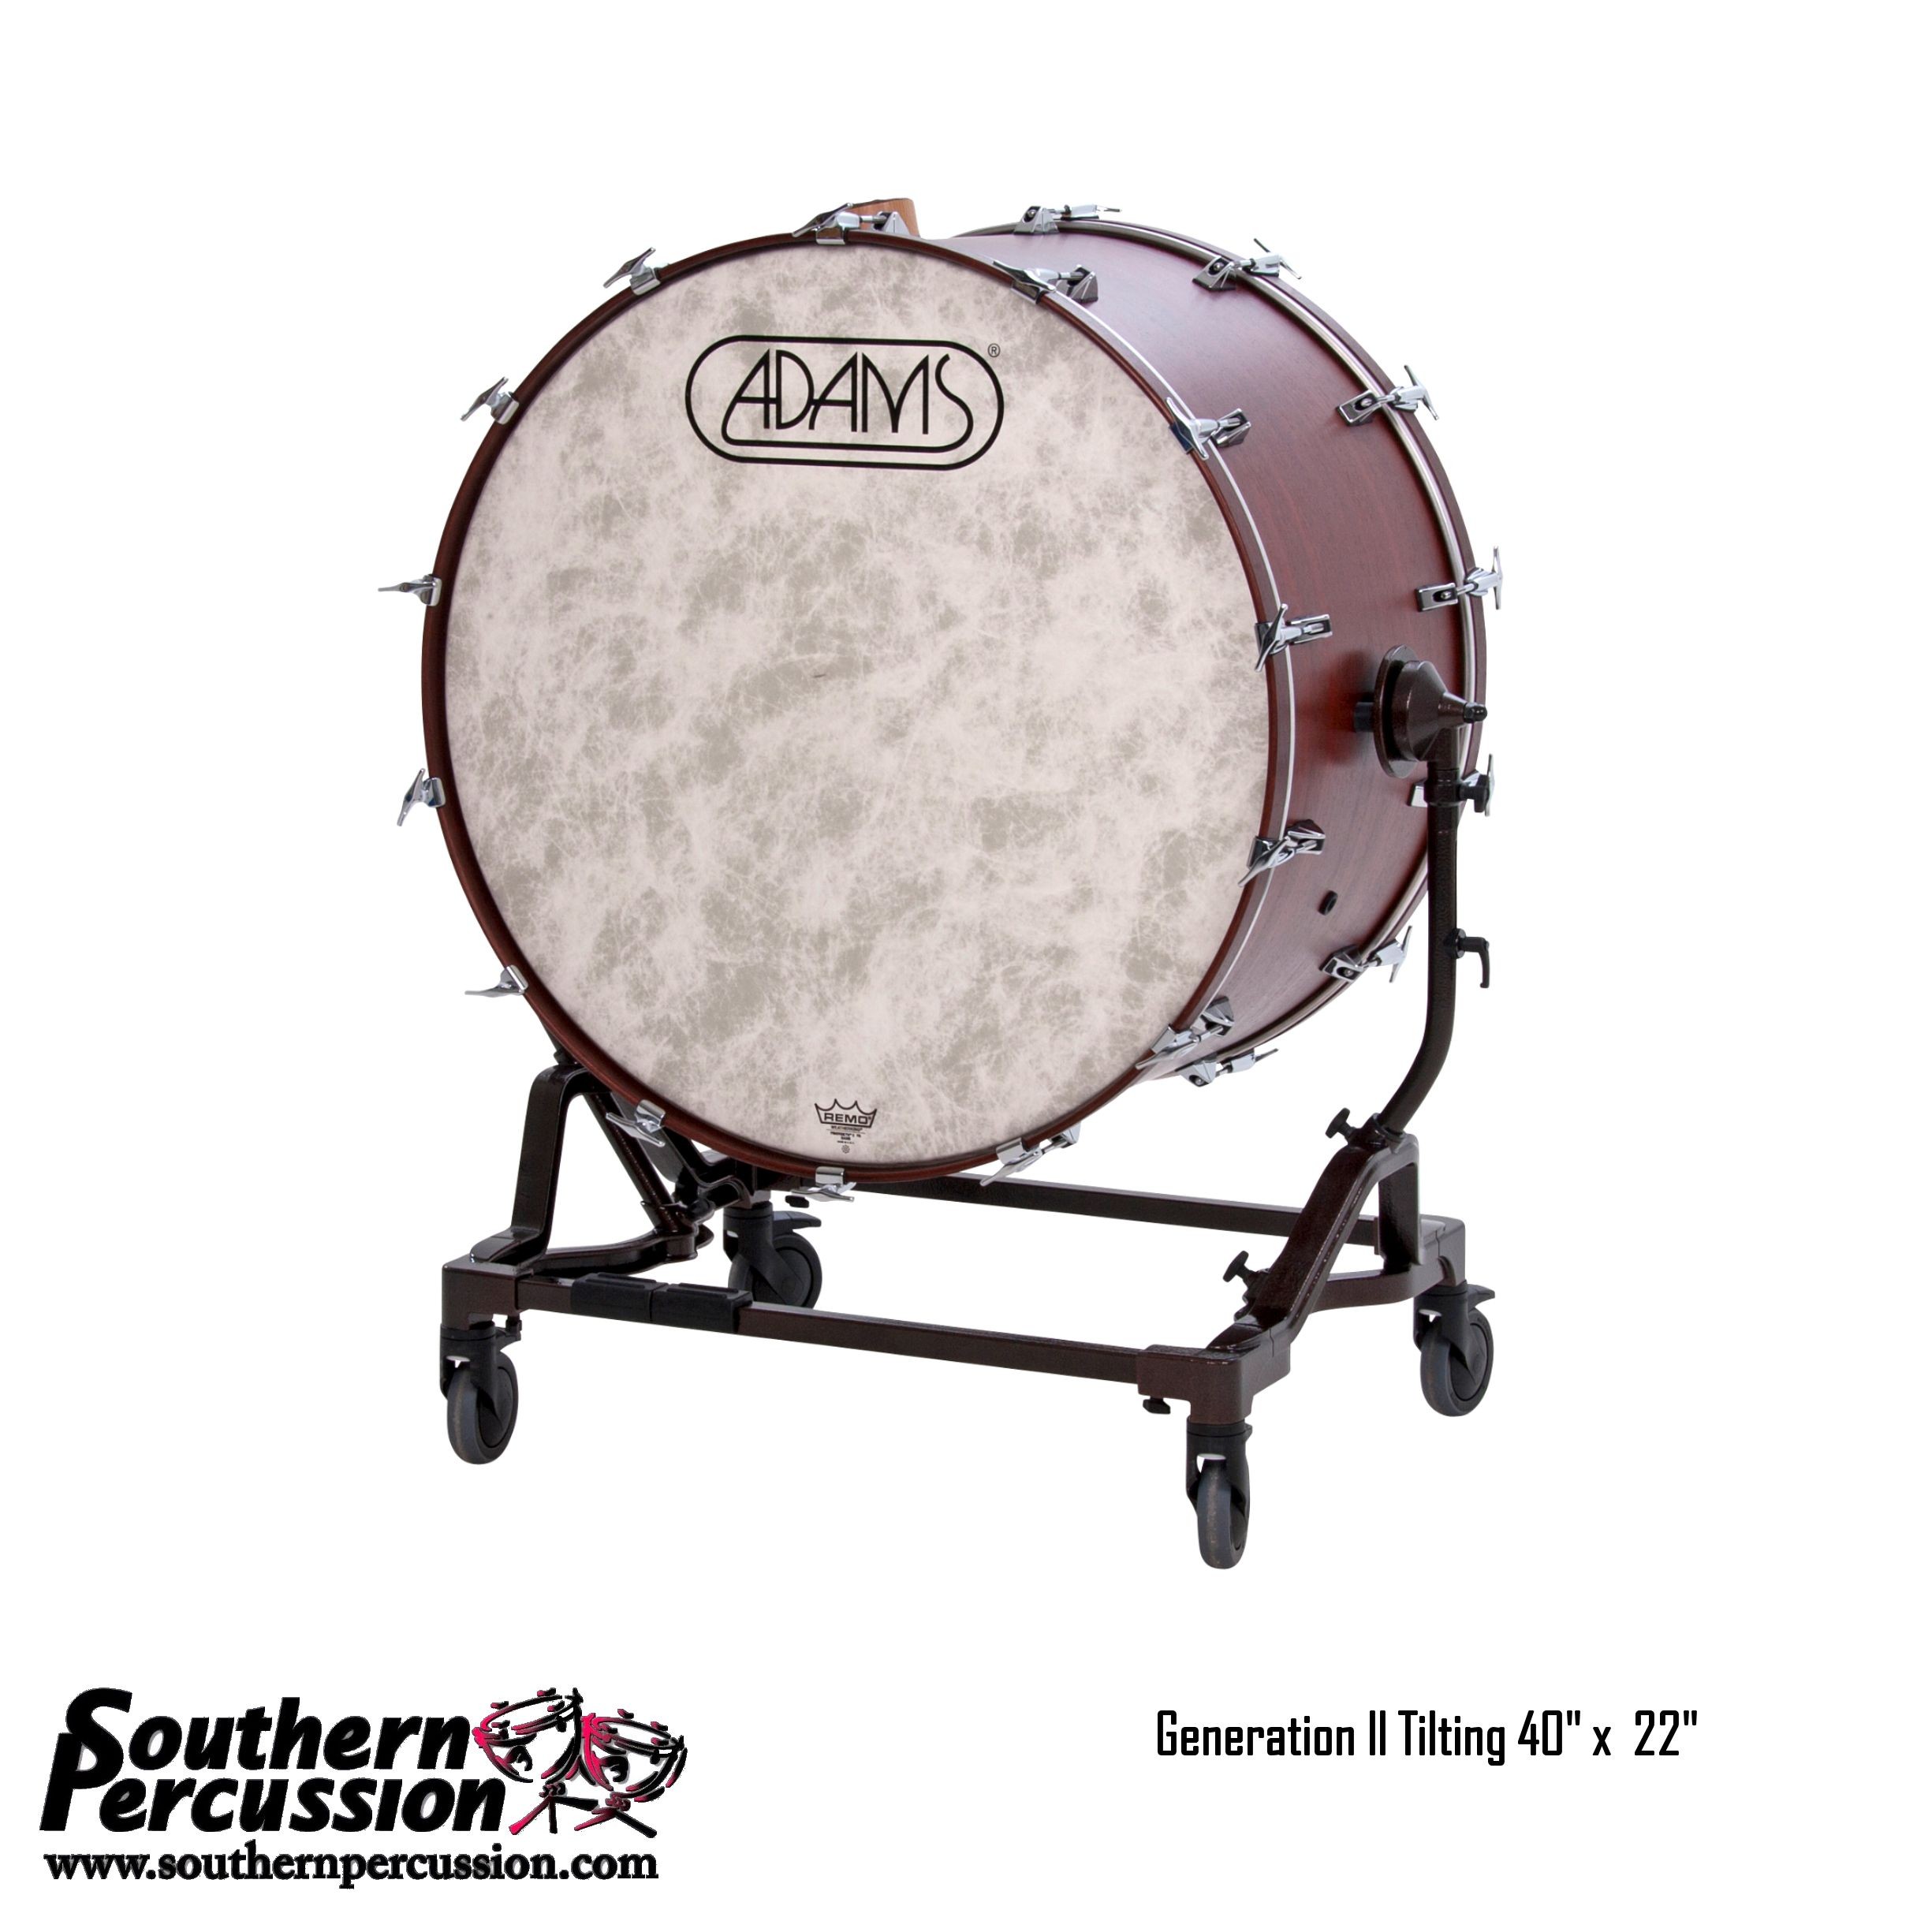 Adams 40x22" Tilting Concert Bass Drum